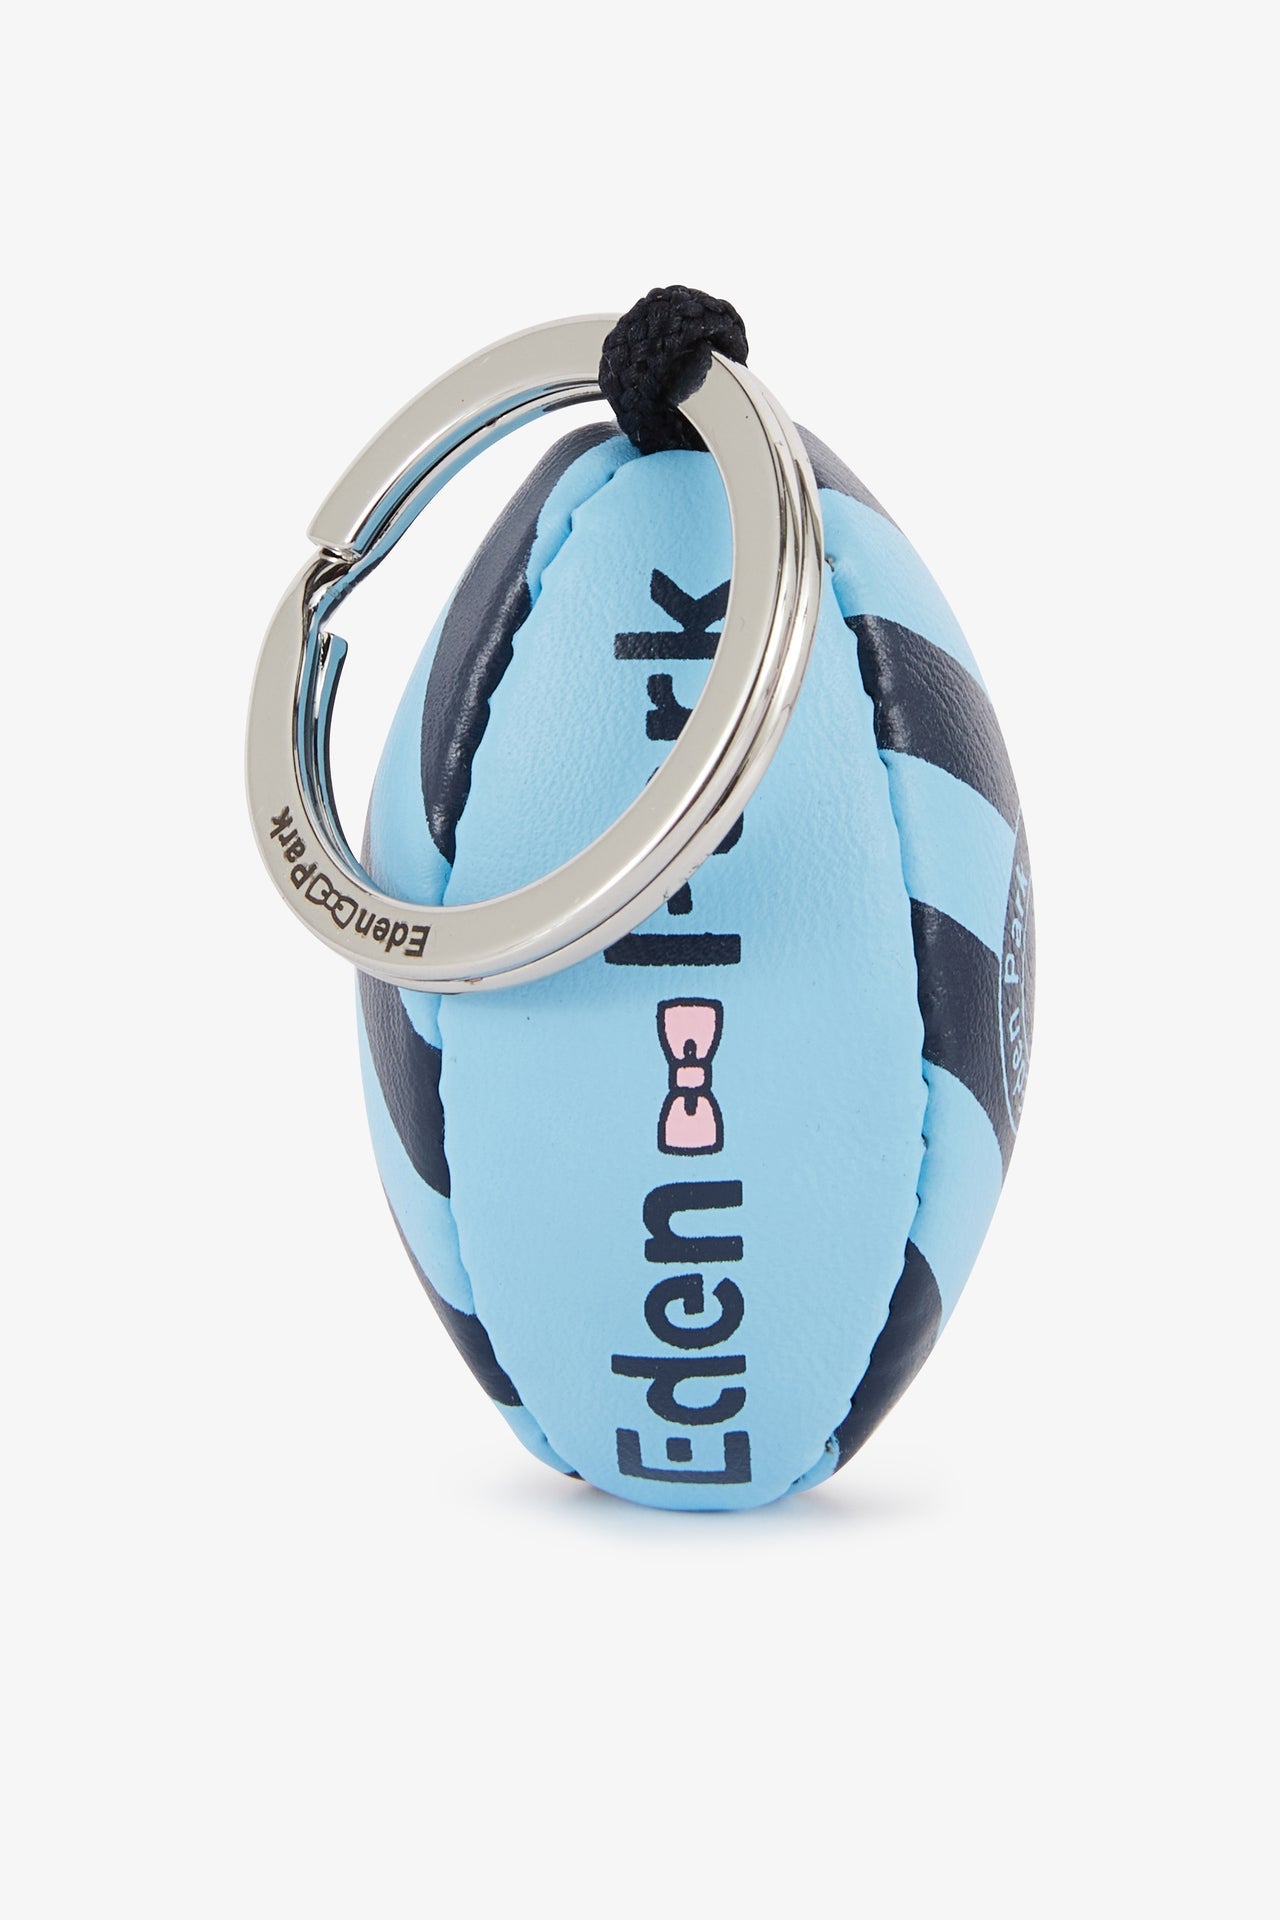 Porte-clés ballon de rugby bleu cerclé et sérigraphié - Image 2